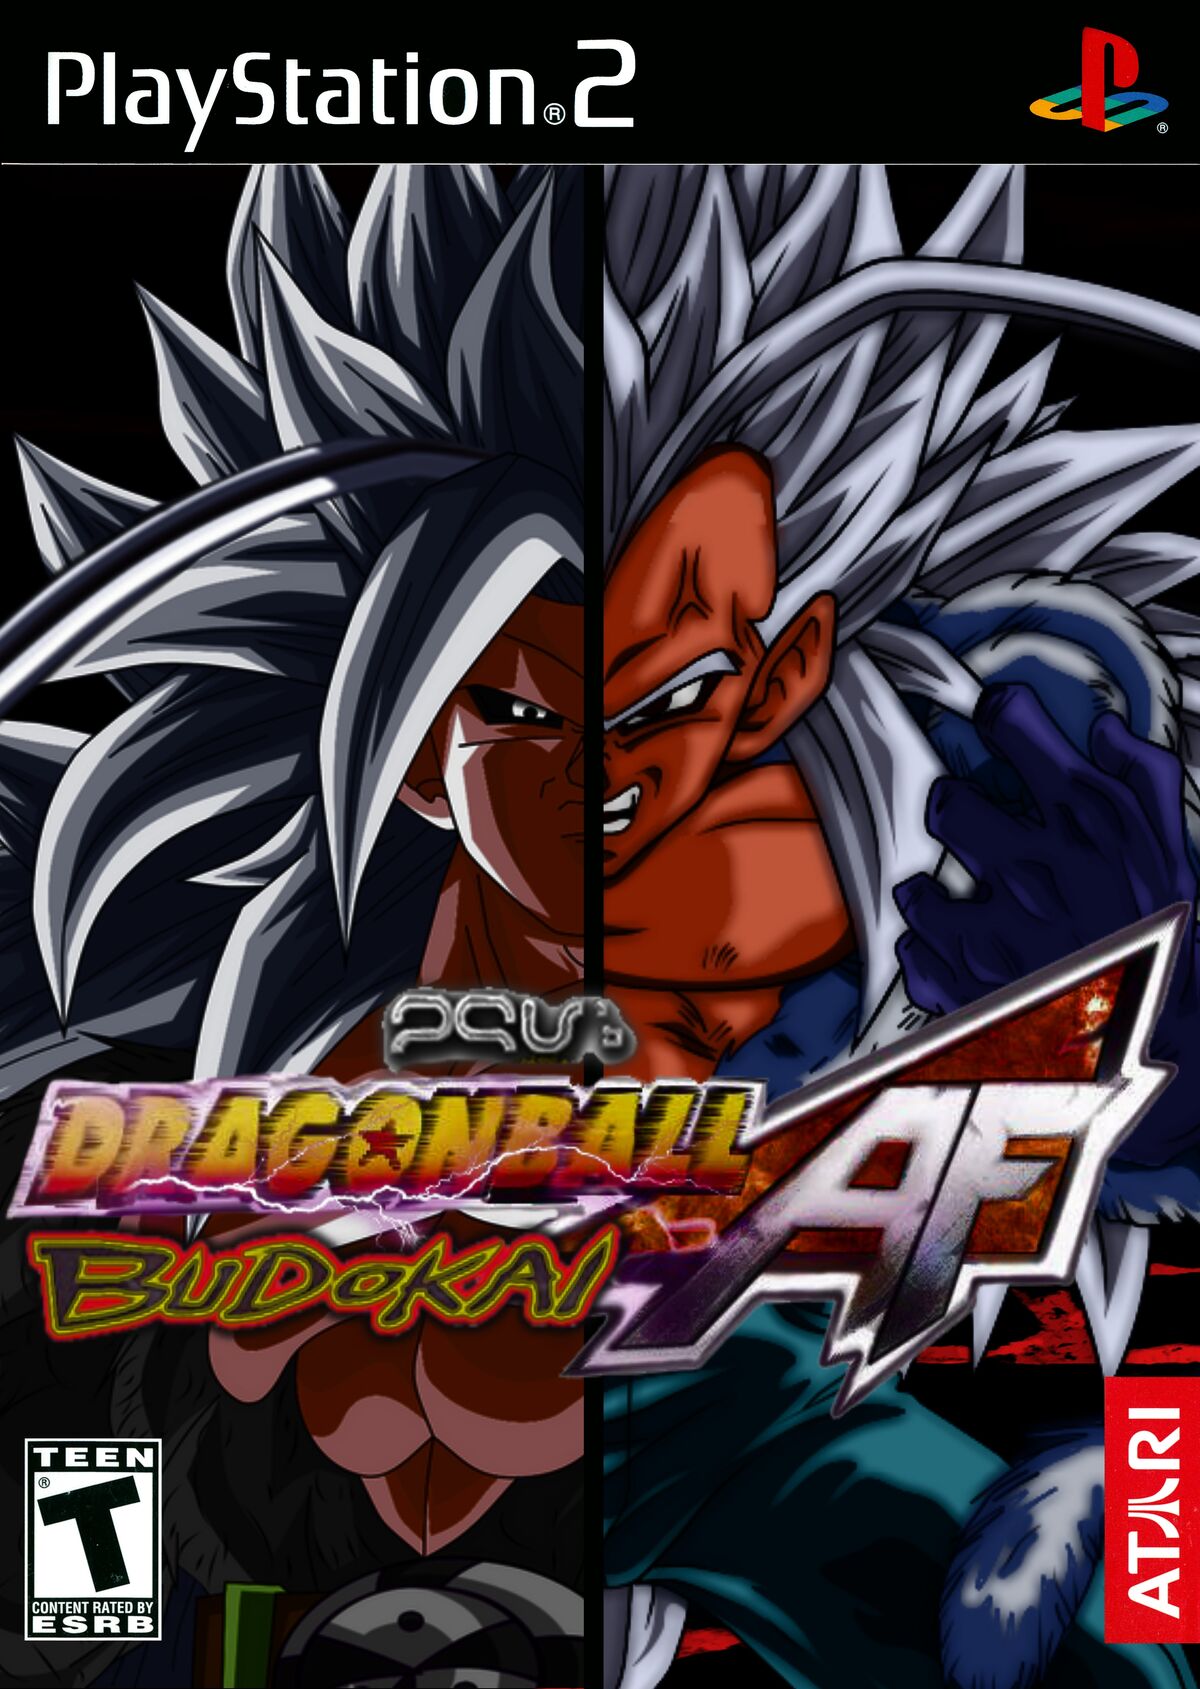 Jeux vidéo Dragon Ball Z - Budokai 3 - Manga news